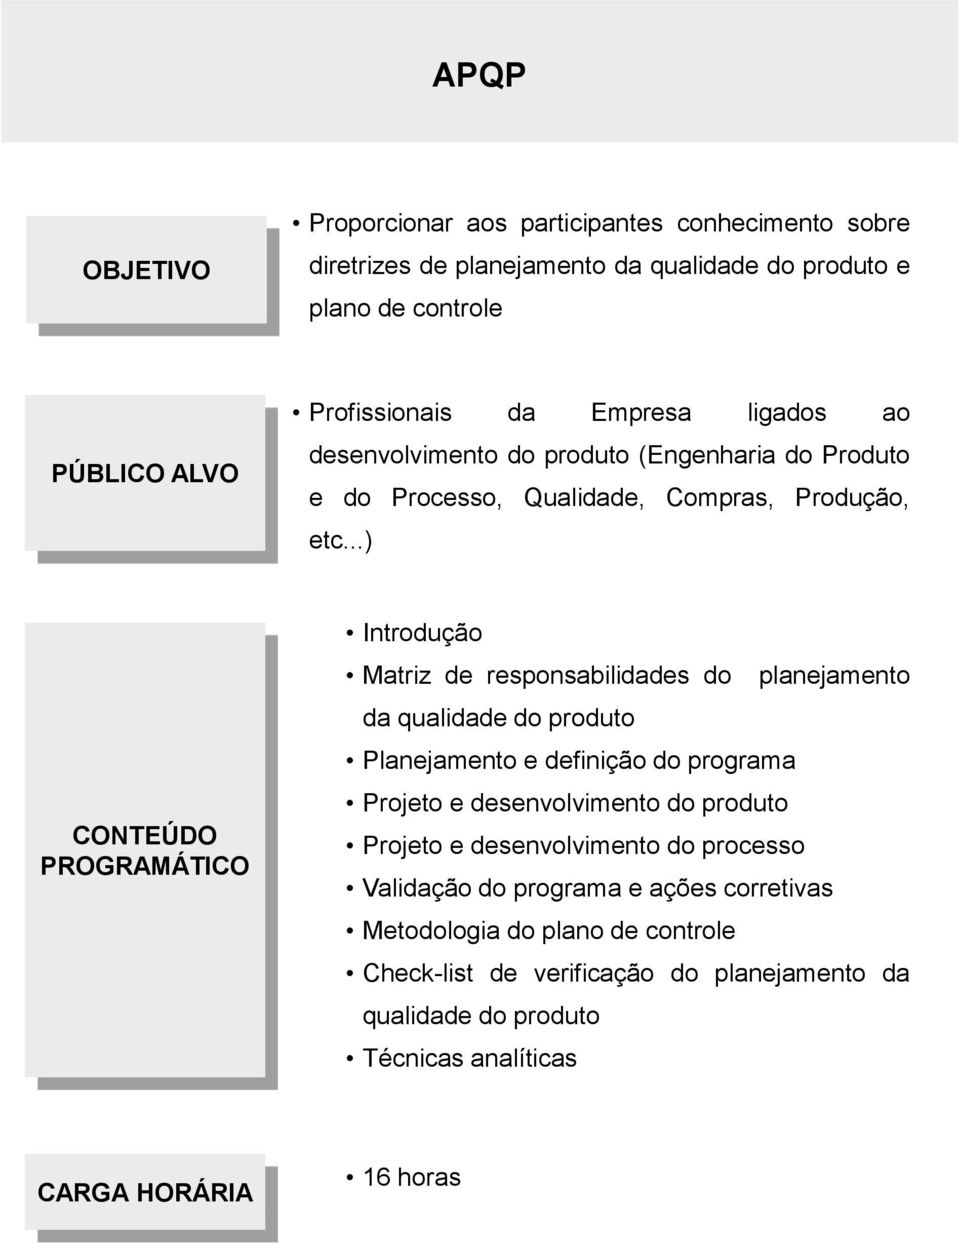 ..) Introdução Matriz de responsabilidades do planejamento da qualidade do produto Planejamento e definição do programa Projeto e desenvolvimento do produto